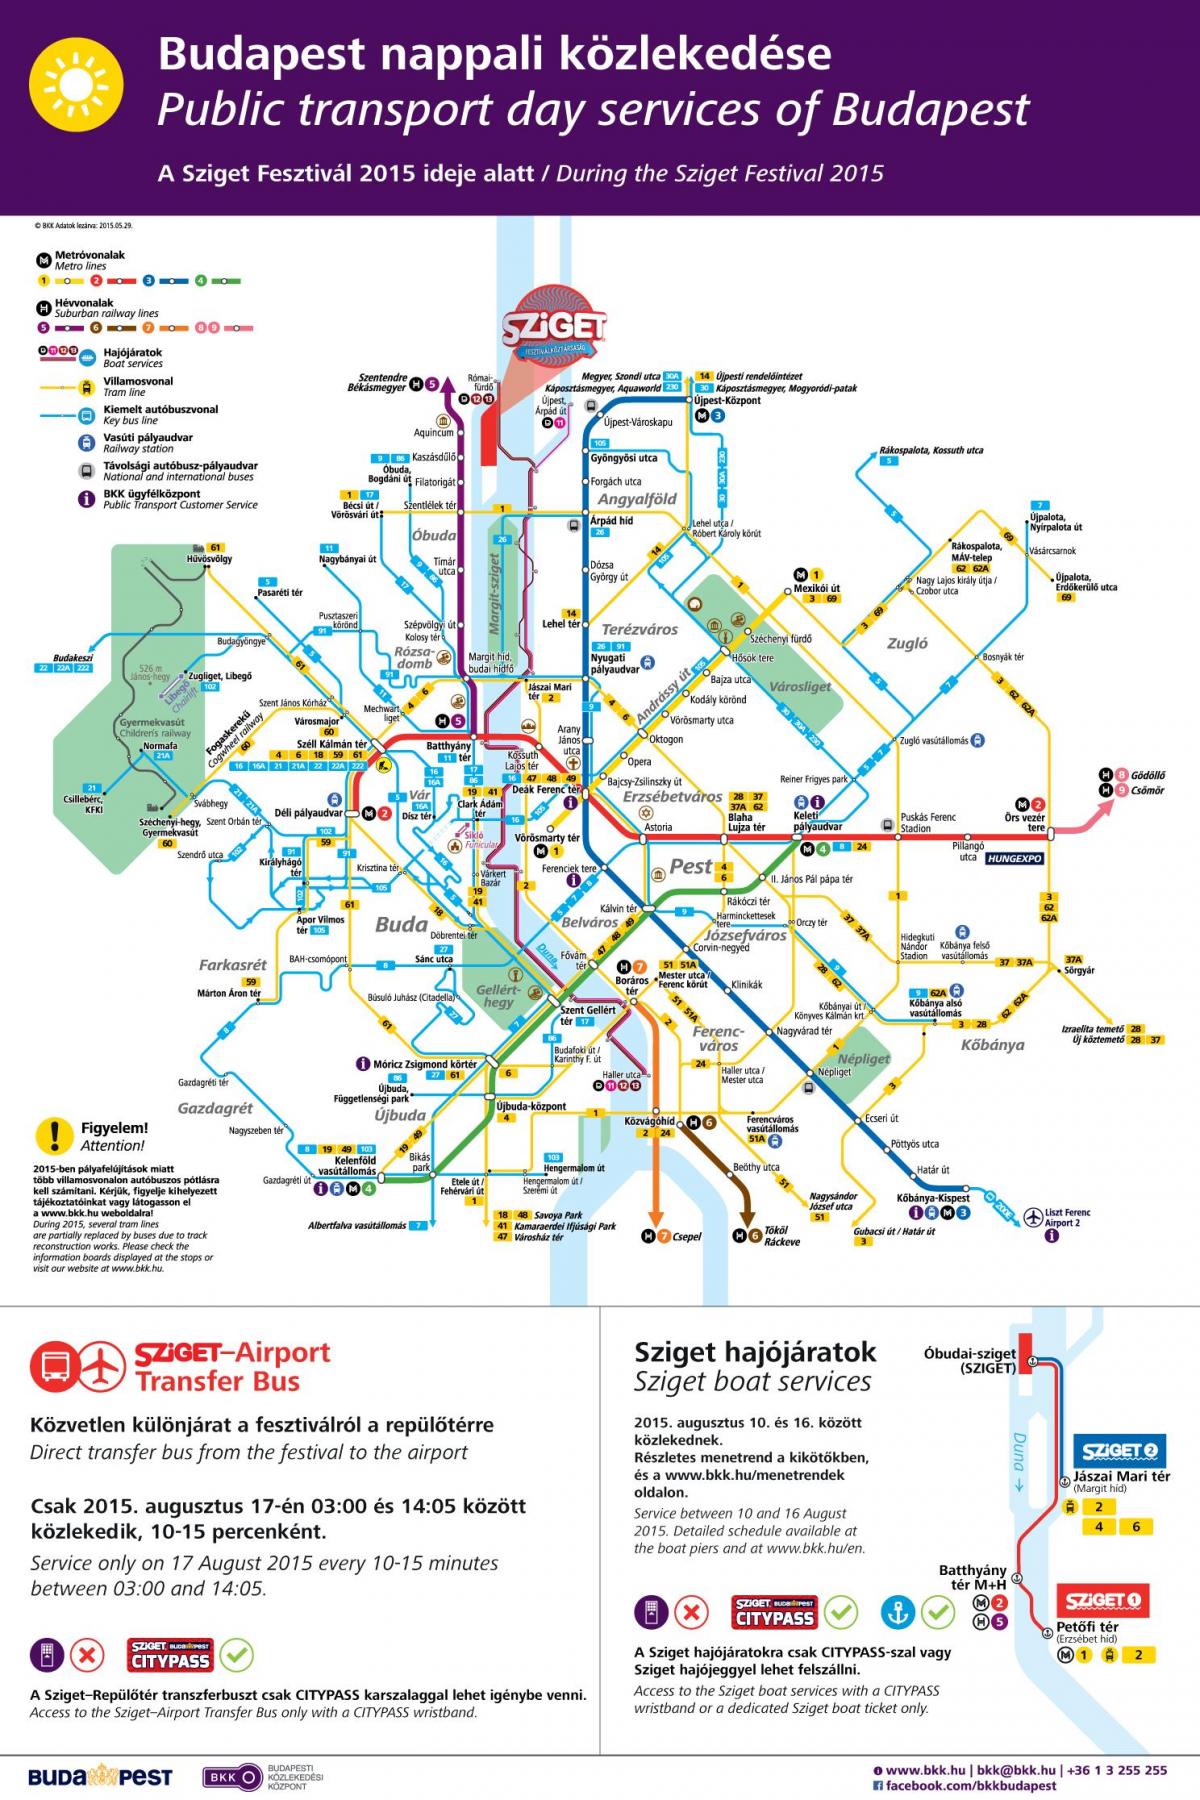 budapest streetcar hartë